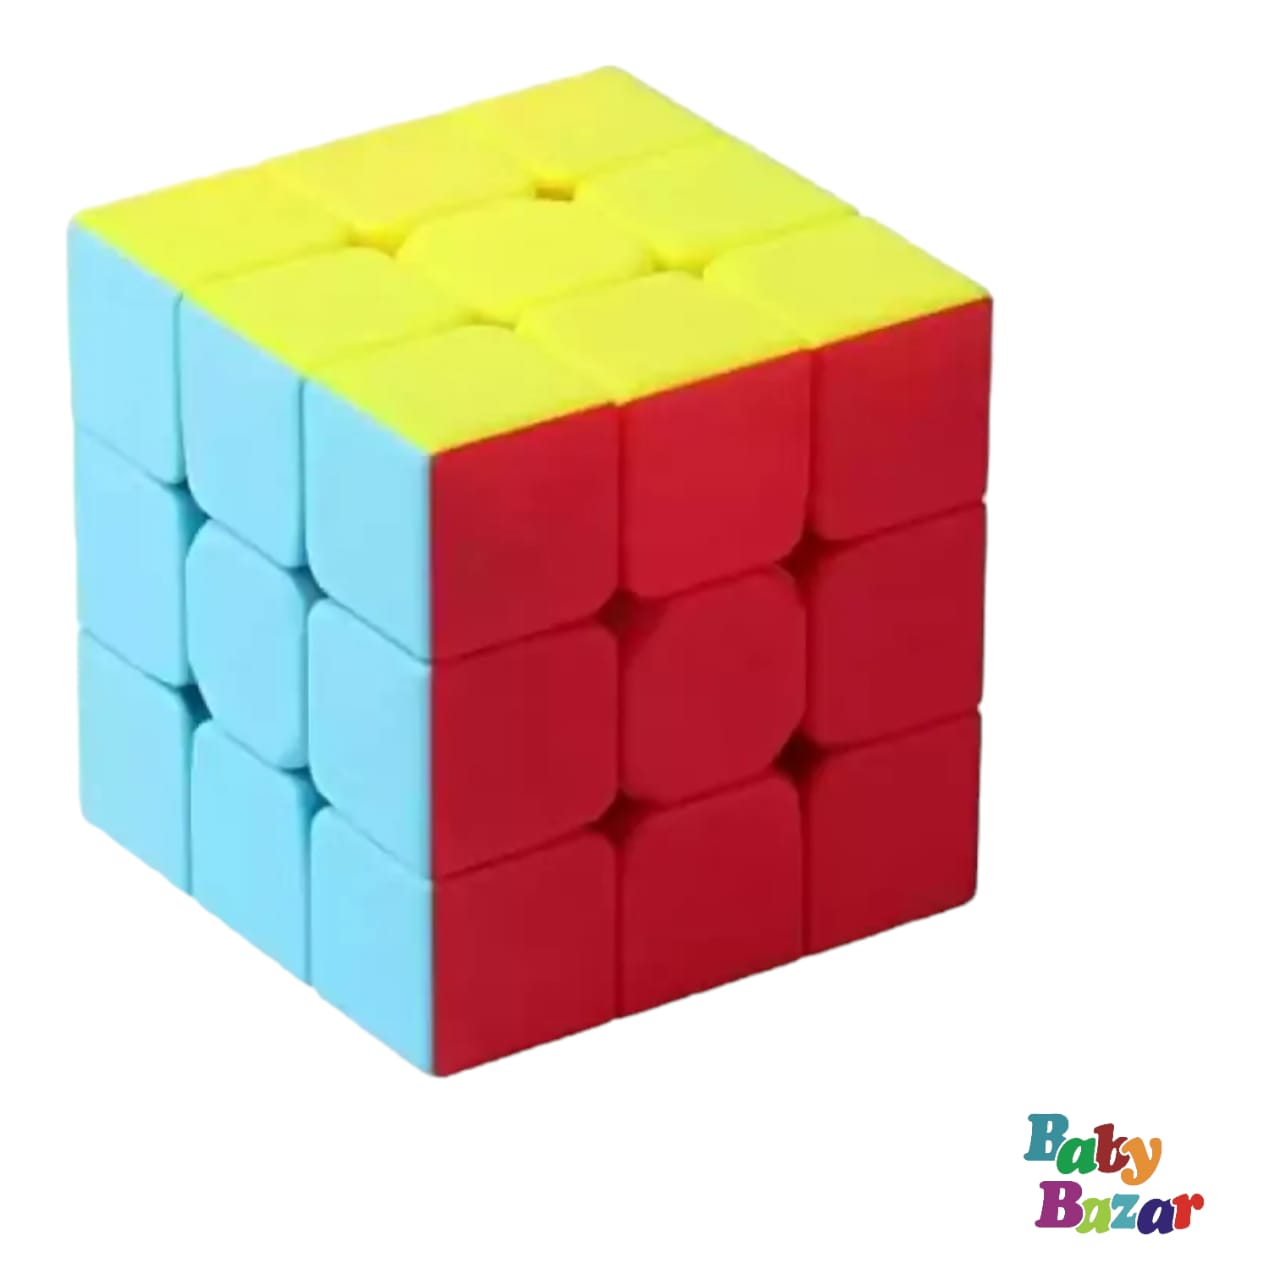 Super Fast 3x3x3 Rubik's Cube